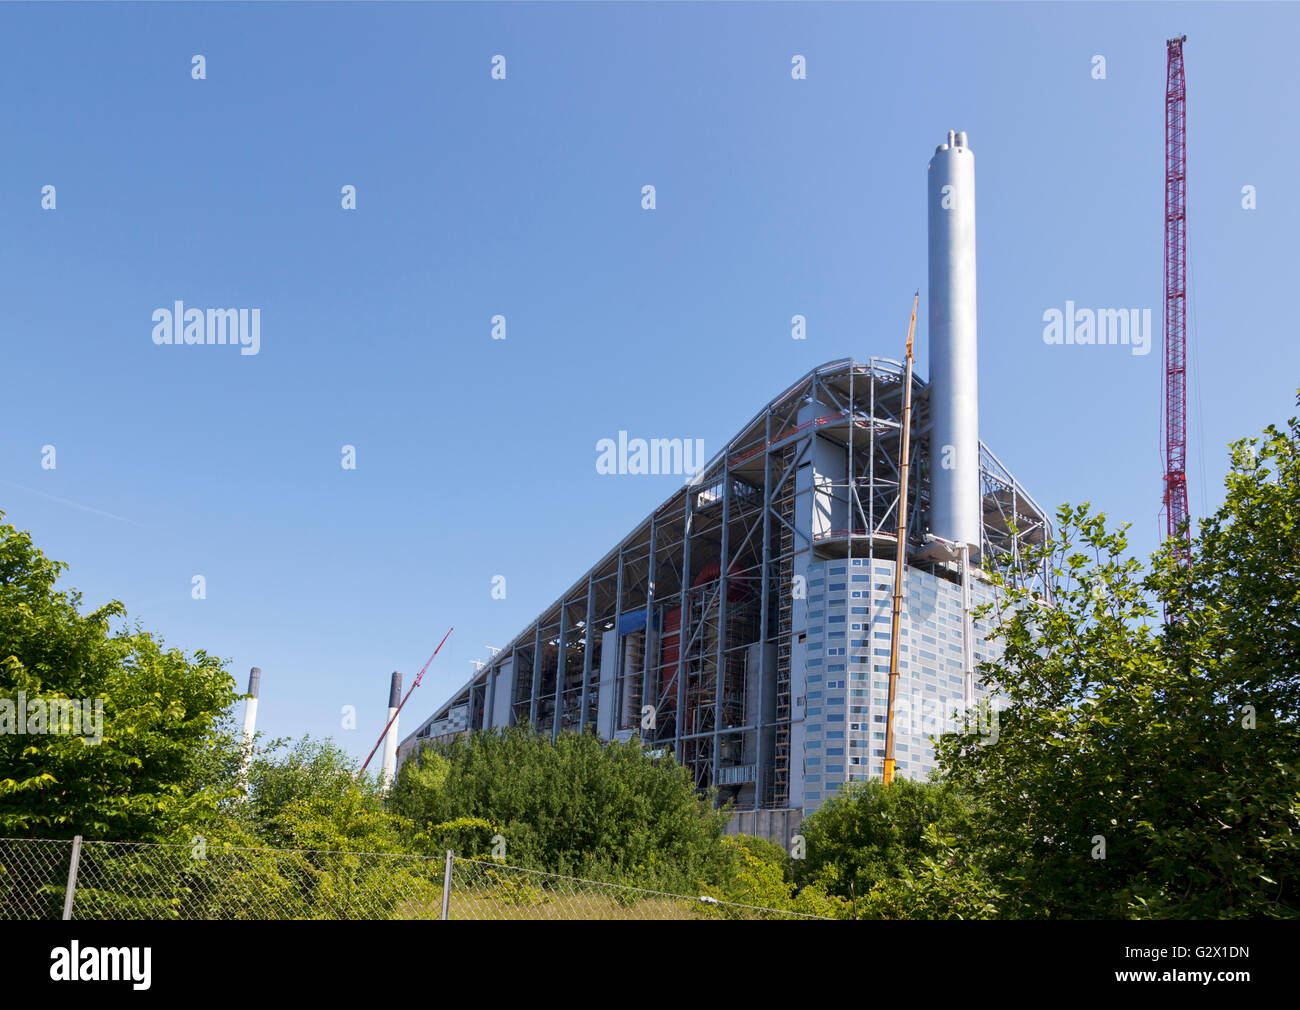 La nuova centrale Amager Slope, CopenHill e Waste-to-Energy, progettata da Bjarke Ingels, BIG, sta prendendo forma e aprirà nel 2017. Copen-Hill. Foto Stock